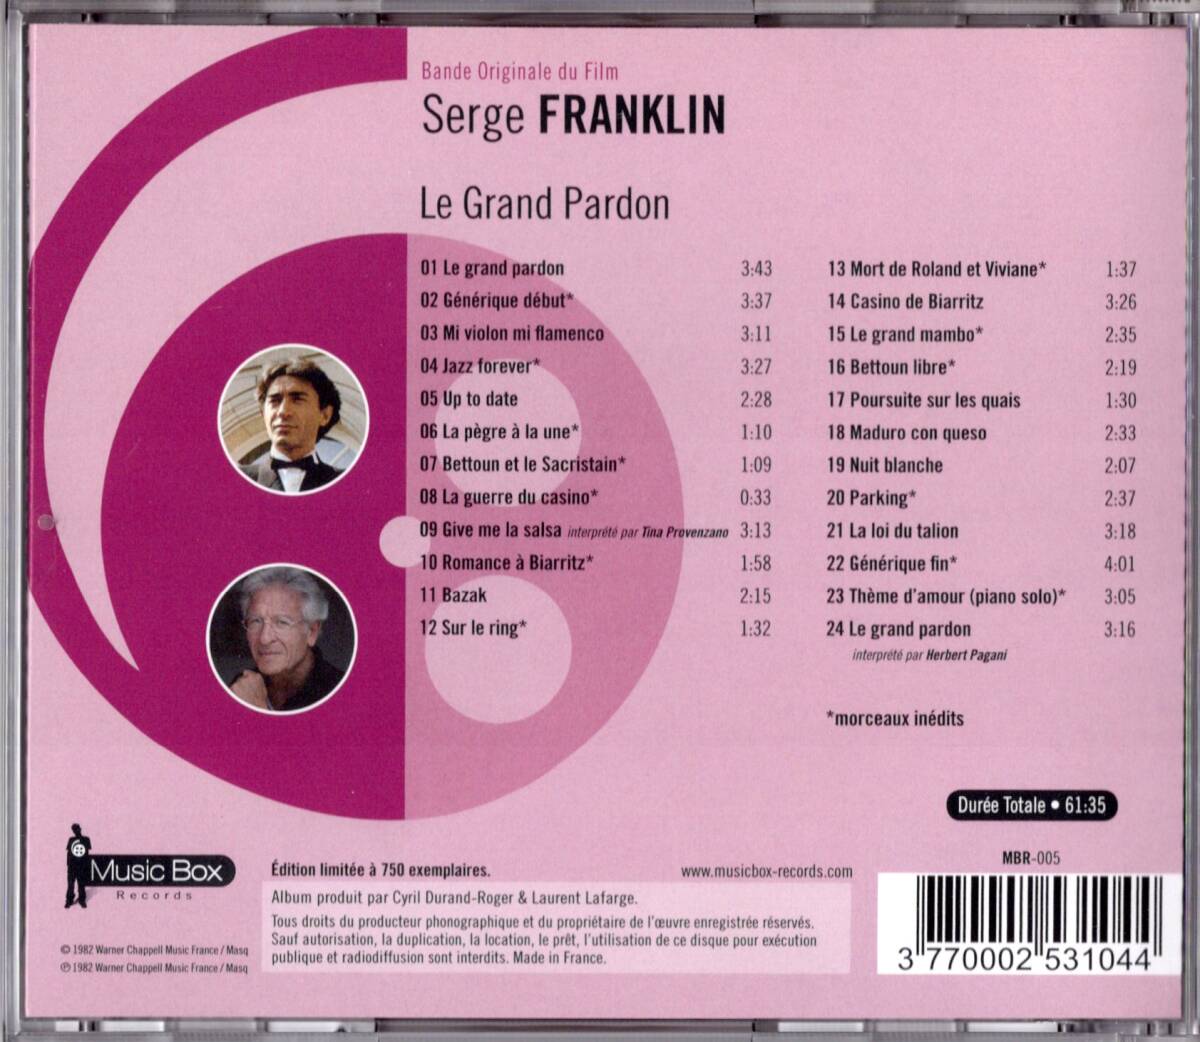 【CD】セルジュ・フランクリン「流血の絆 野望篇 (LE GRAND PARDON)」仏盤サントラ(MUSIC BOX MBR-05) 2011年発売 良品の画像2